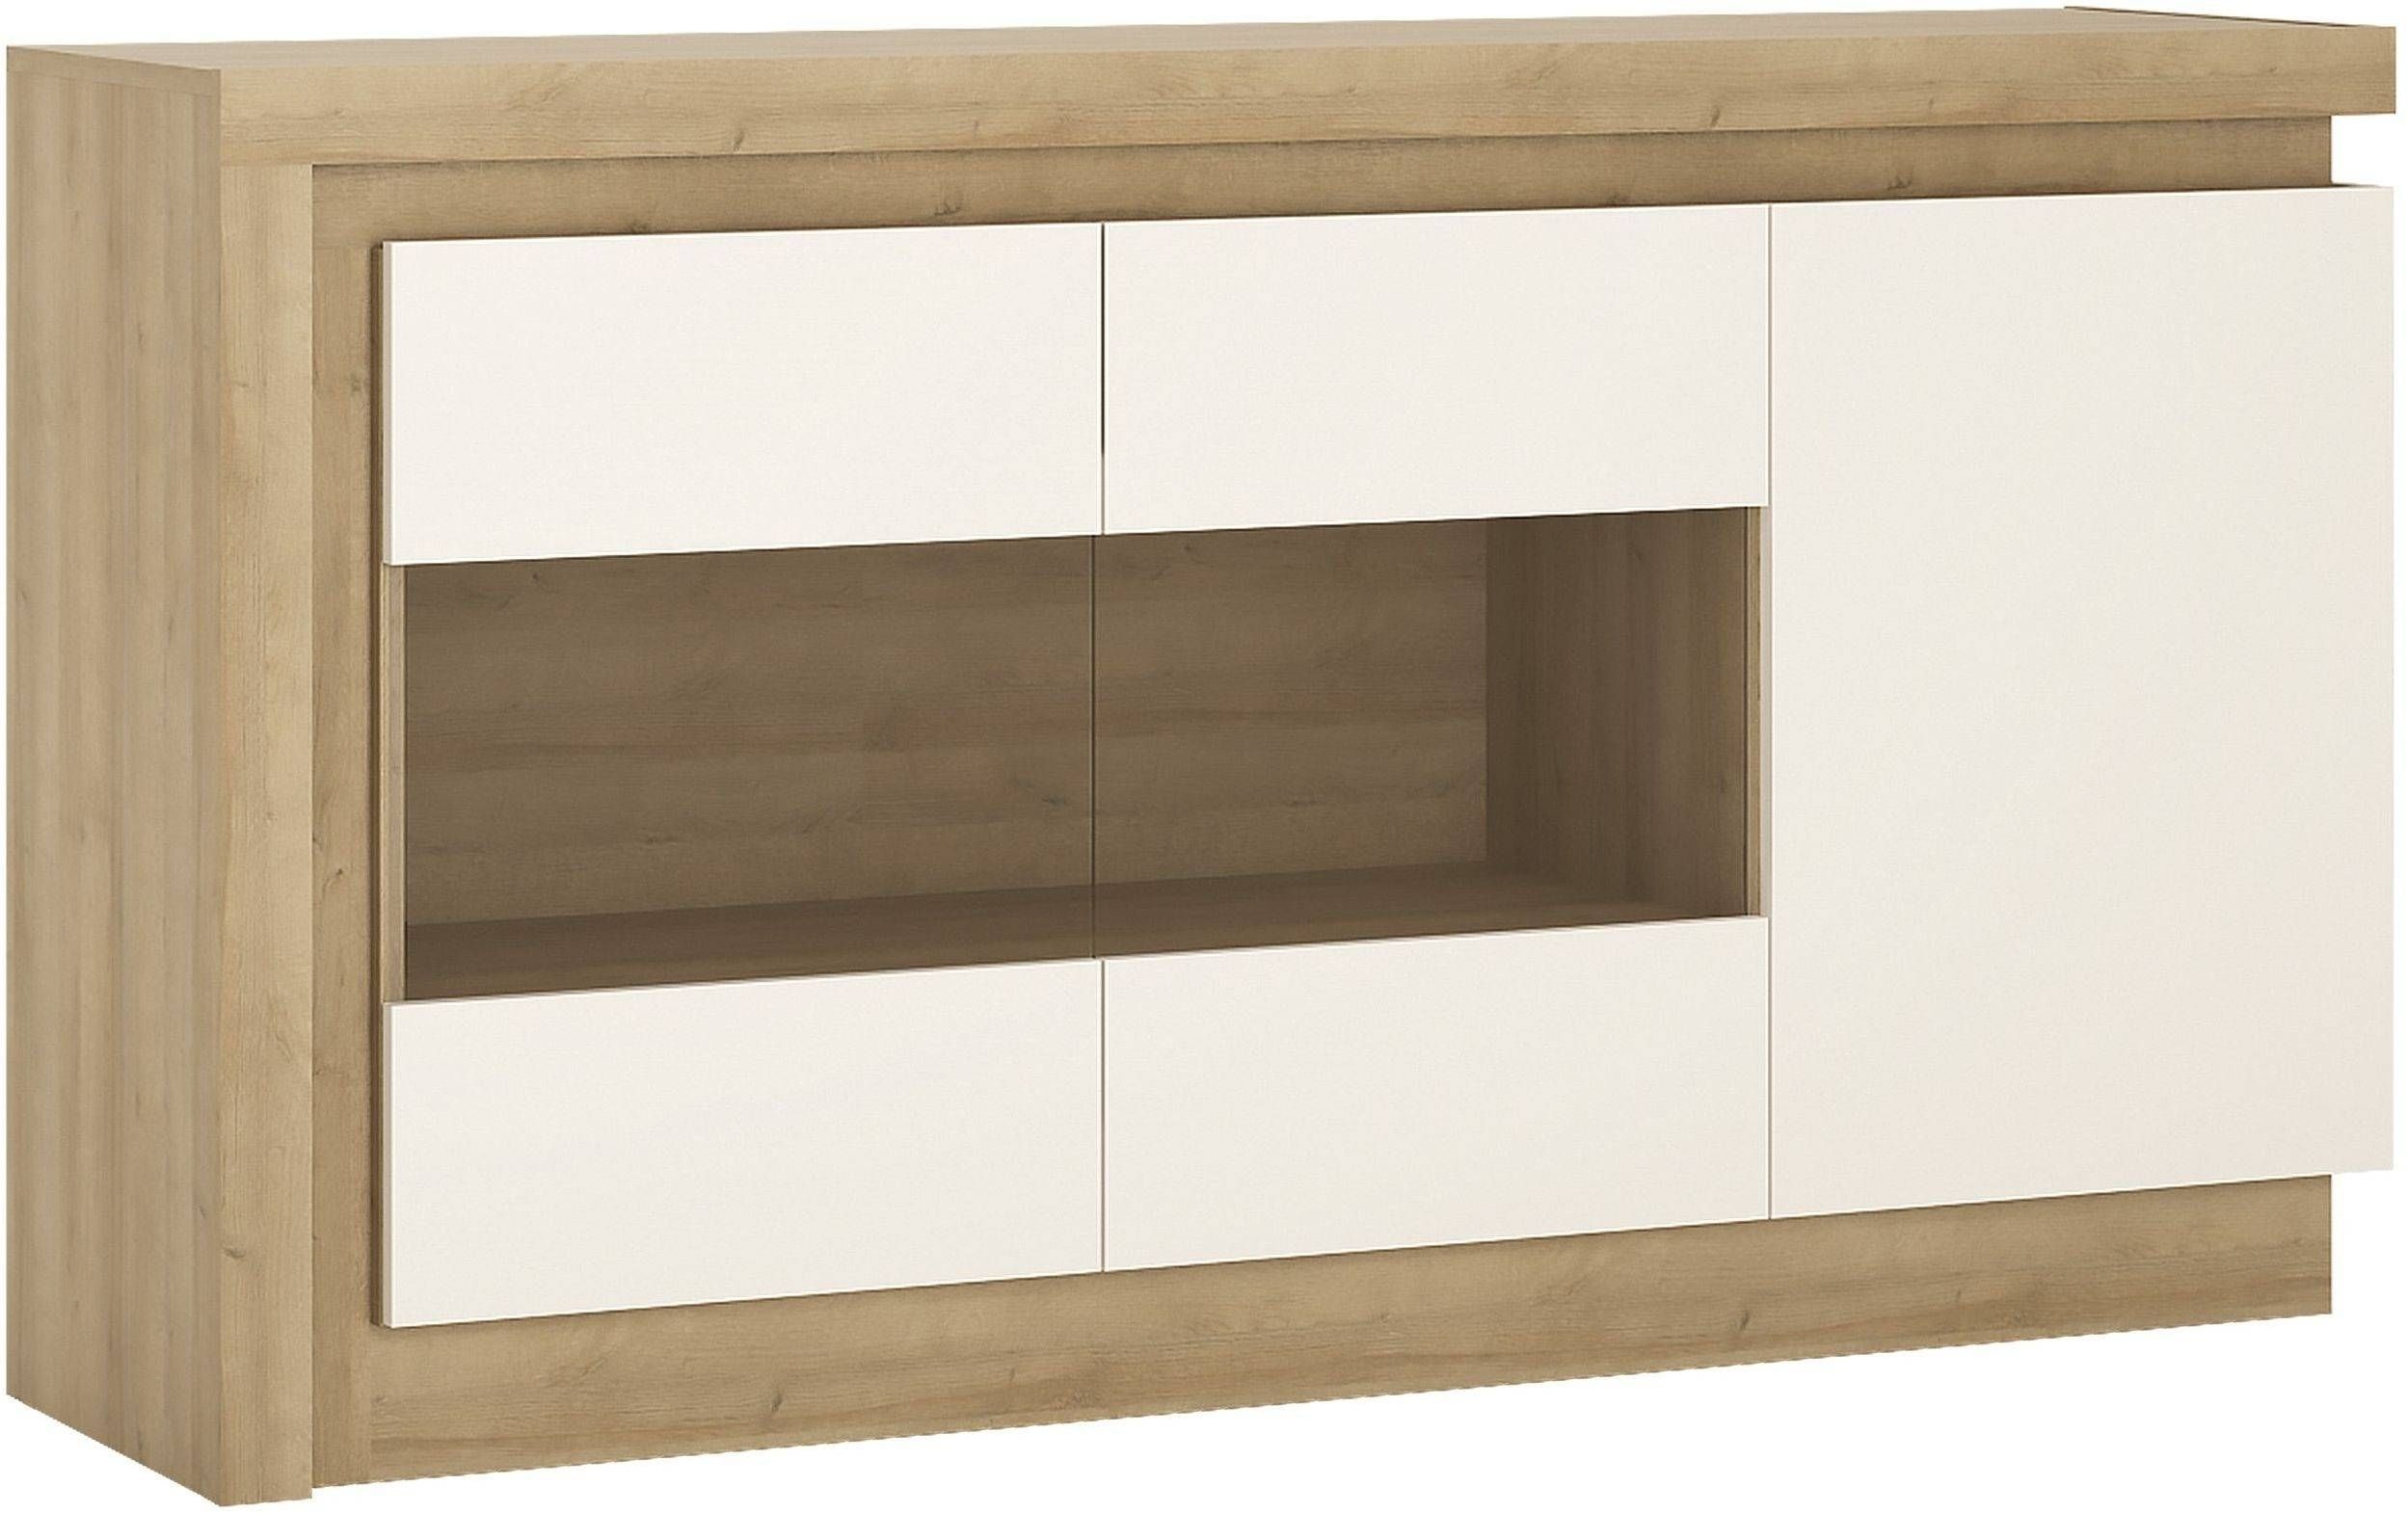 Buy Lyon Riviera Oak And White High Gloss Sideboard – 3 Door For High Gloss Sideboard (View 3 of 20)